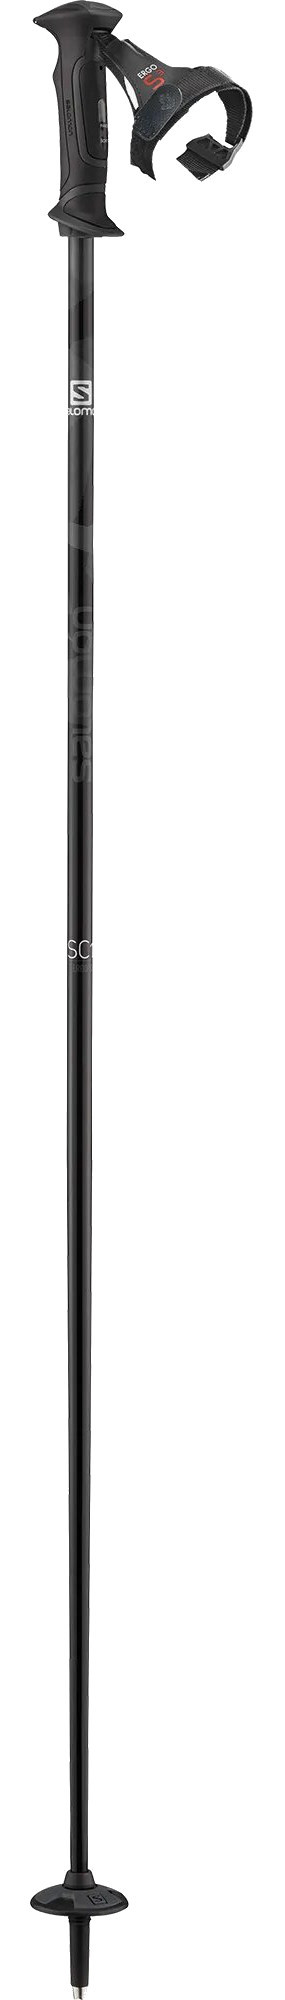 Палки горнолыжные Salomon SC1 ERGO S3 black (2020) 